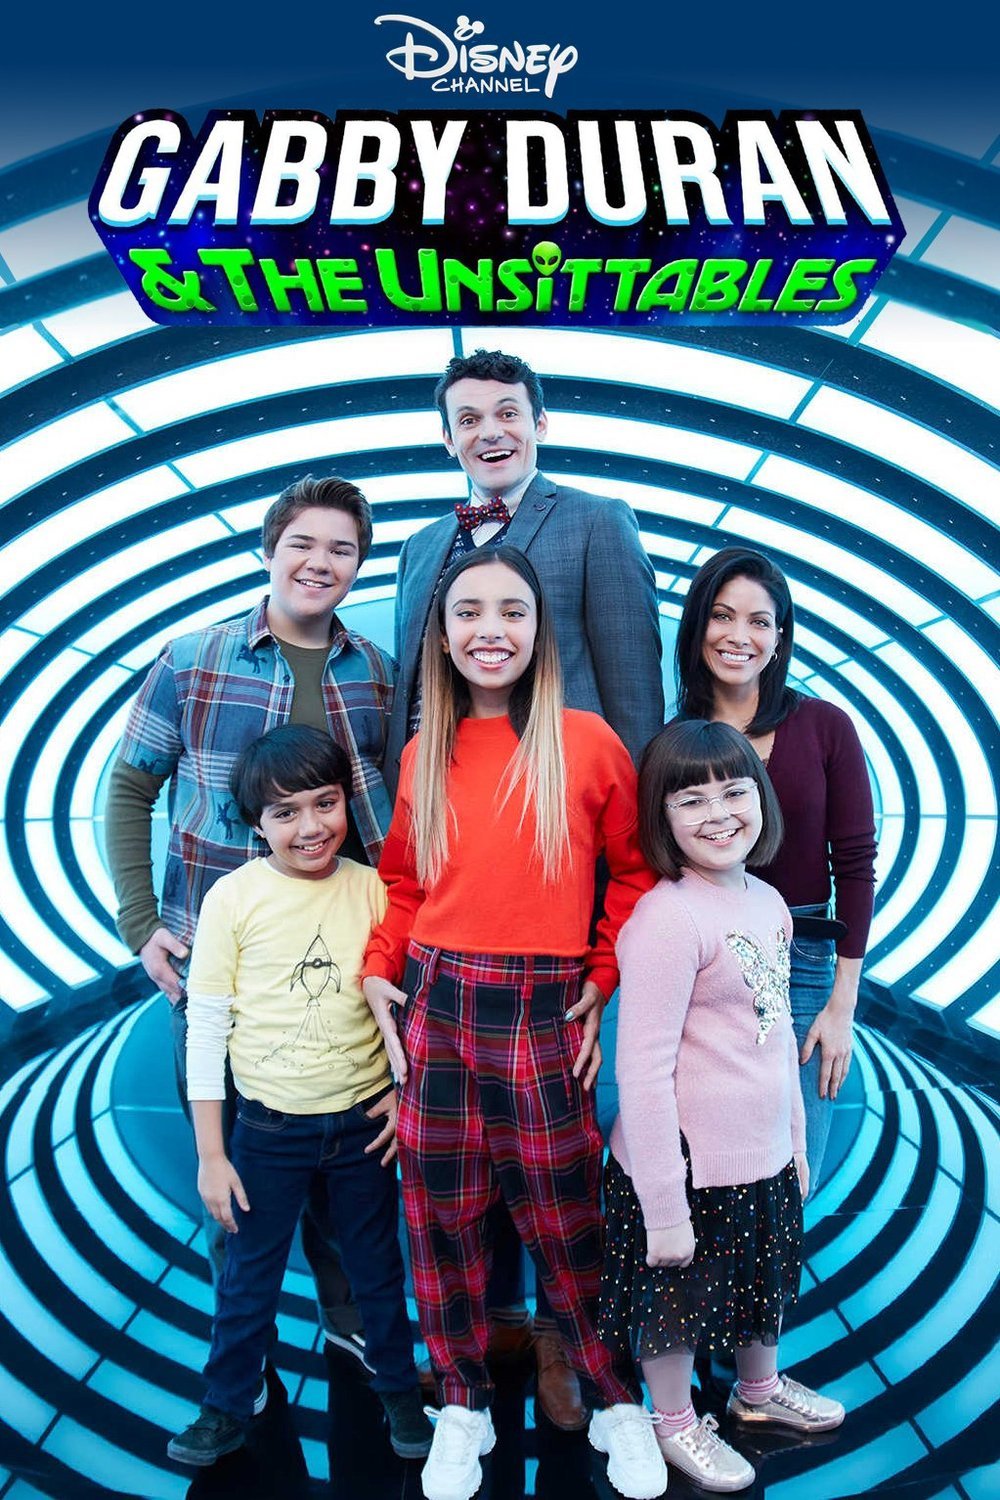 L'affiche du film Gabby Duran & the Unsittables